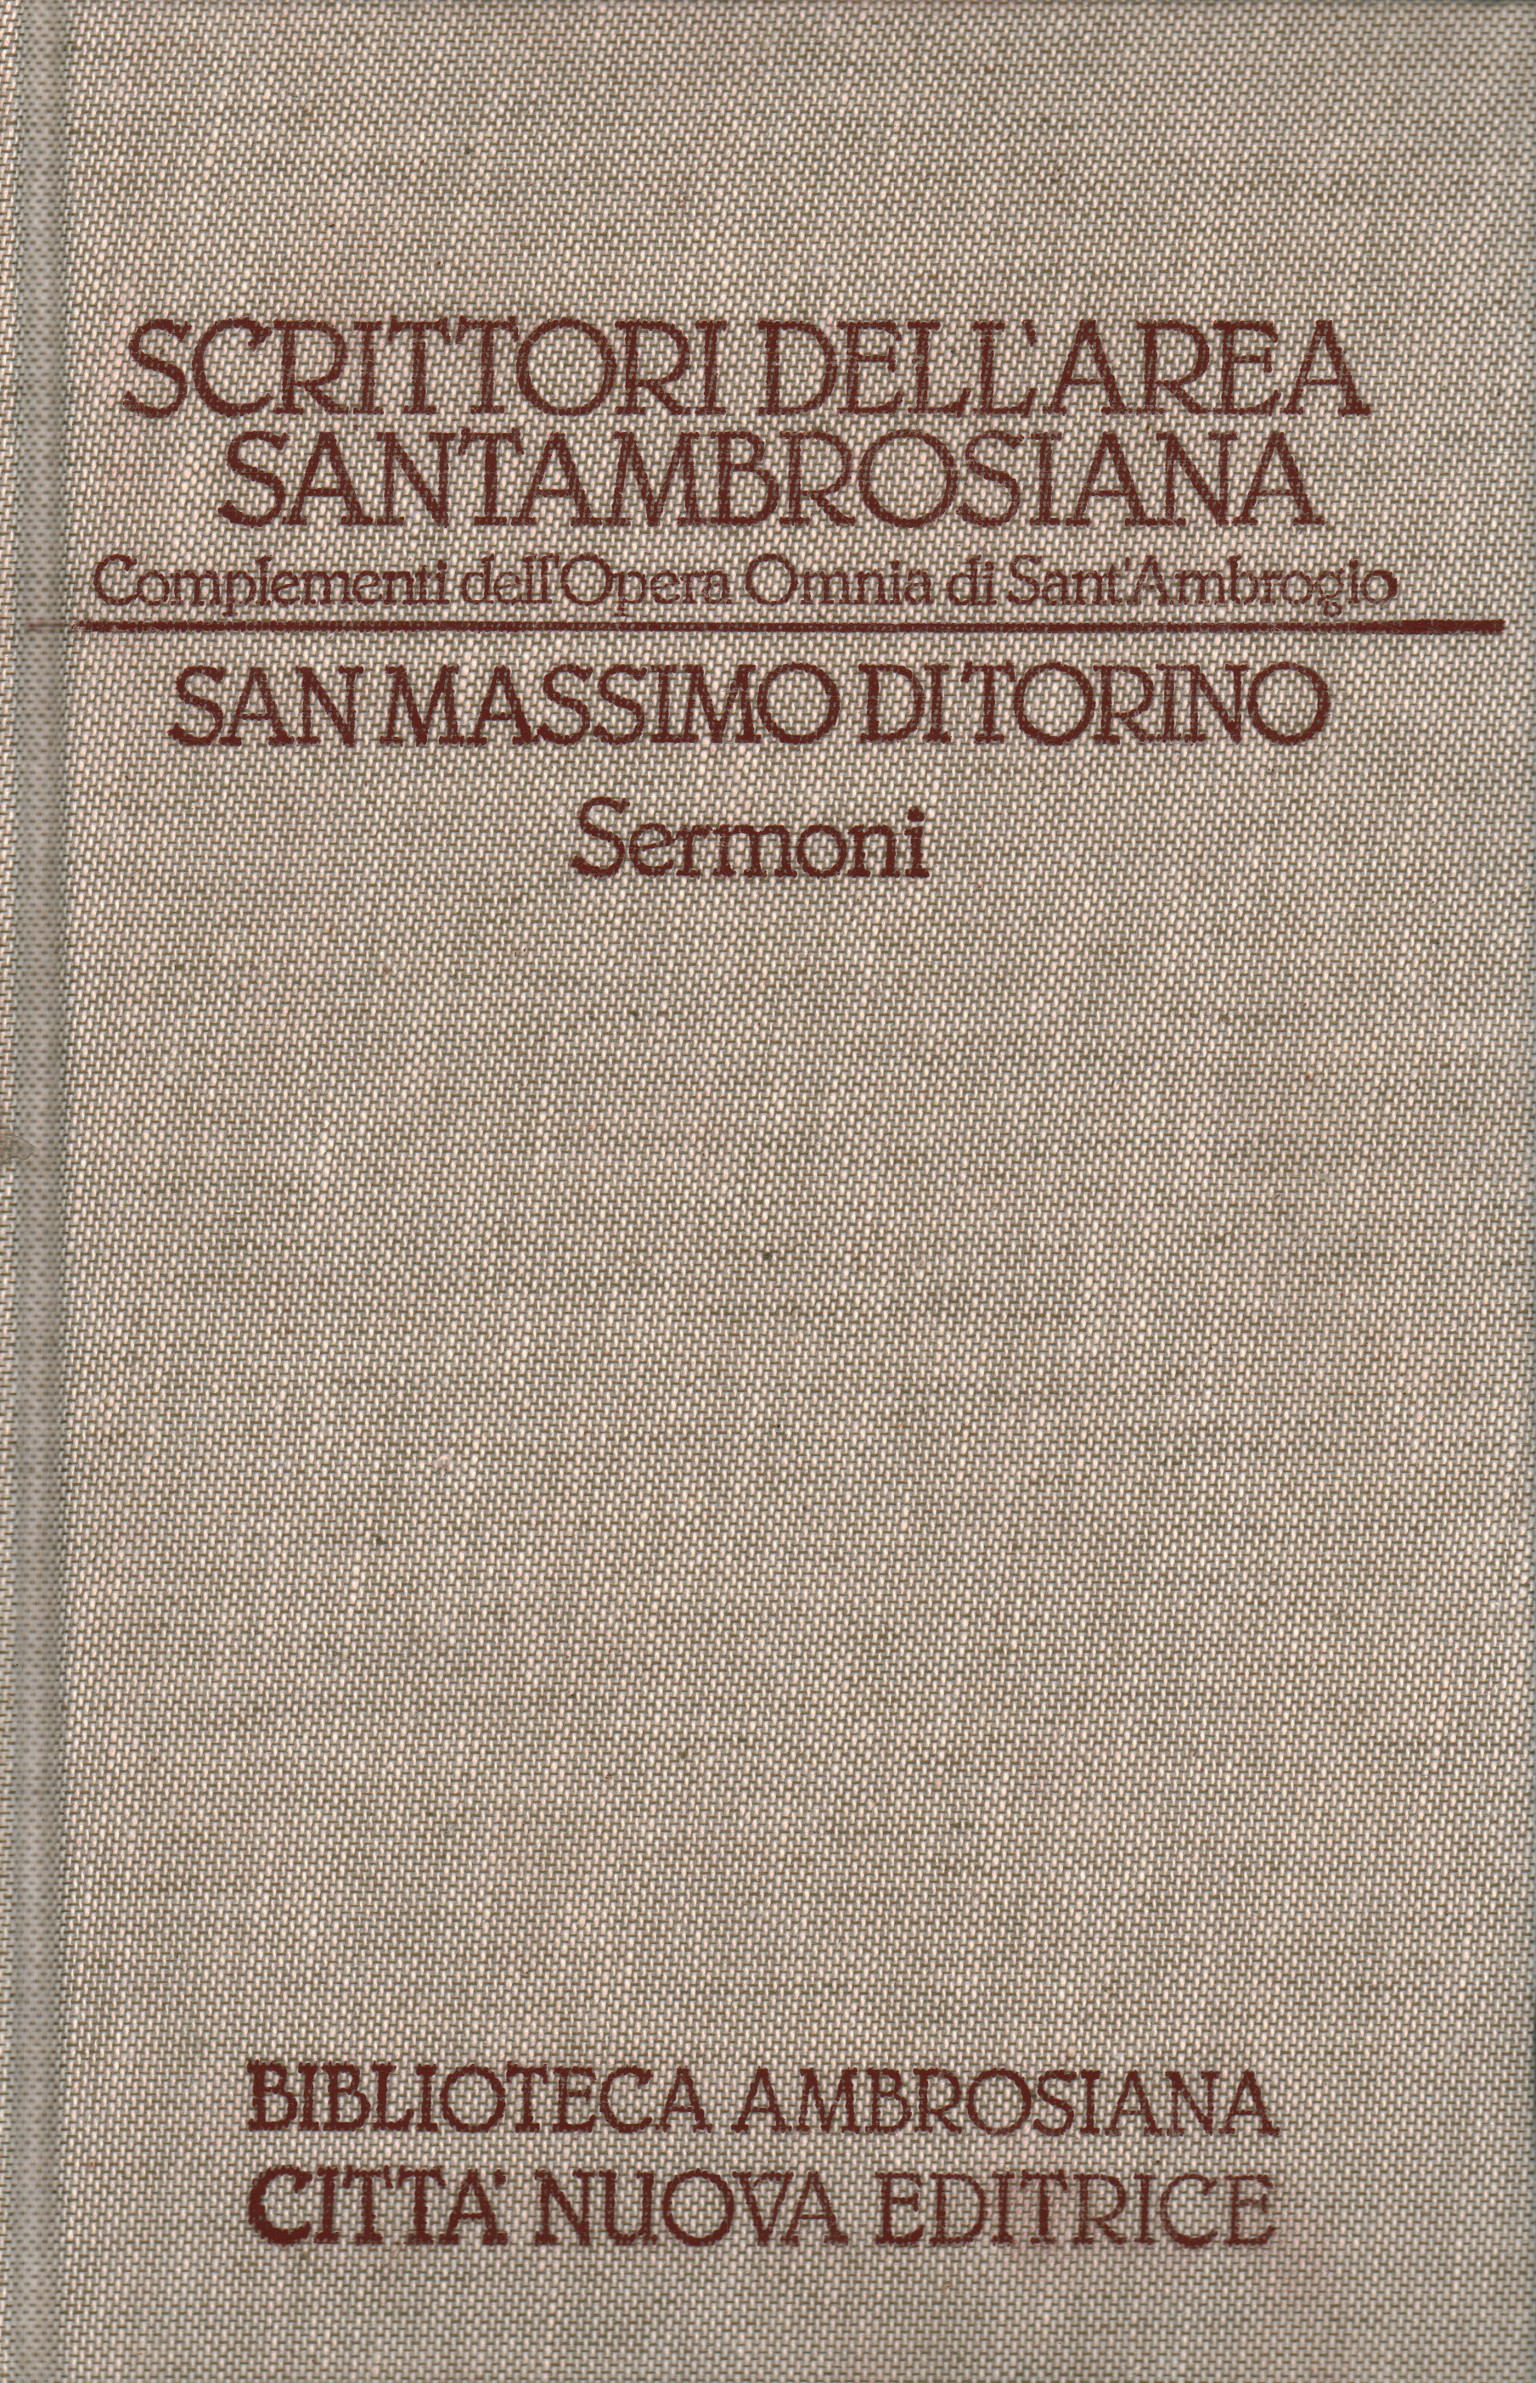 Scrittori dell'area Santambrosiana.,San Massimo di Torino - Sermoni (Volum,San Massimo di Torino. Sermoni